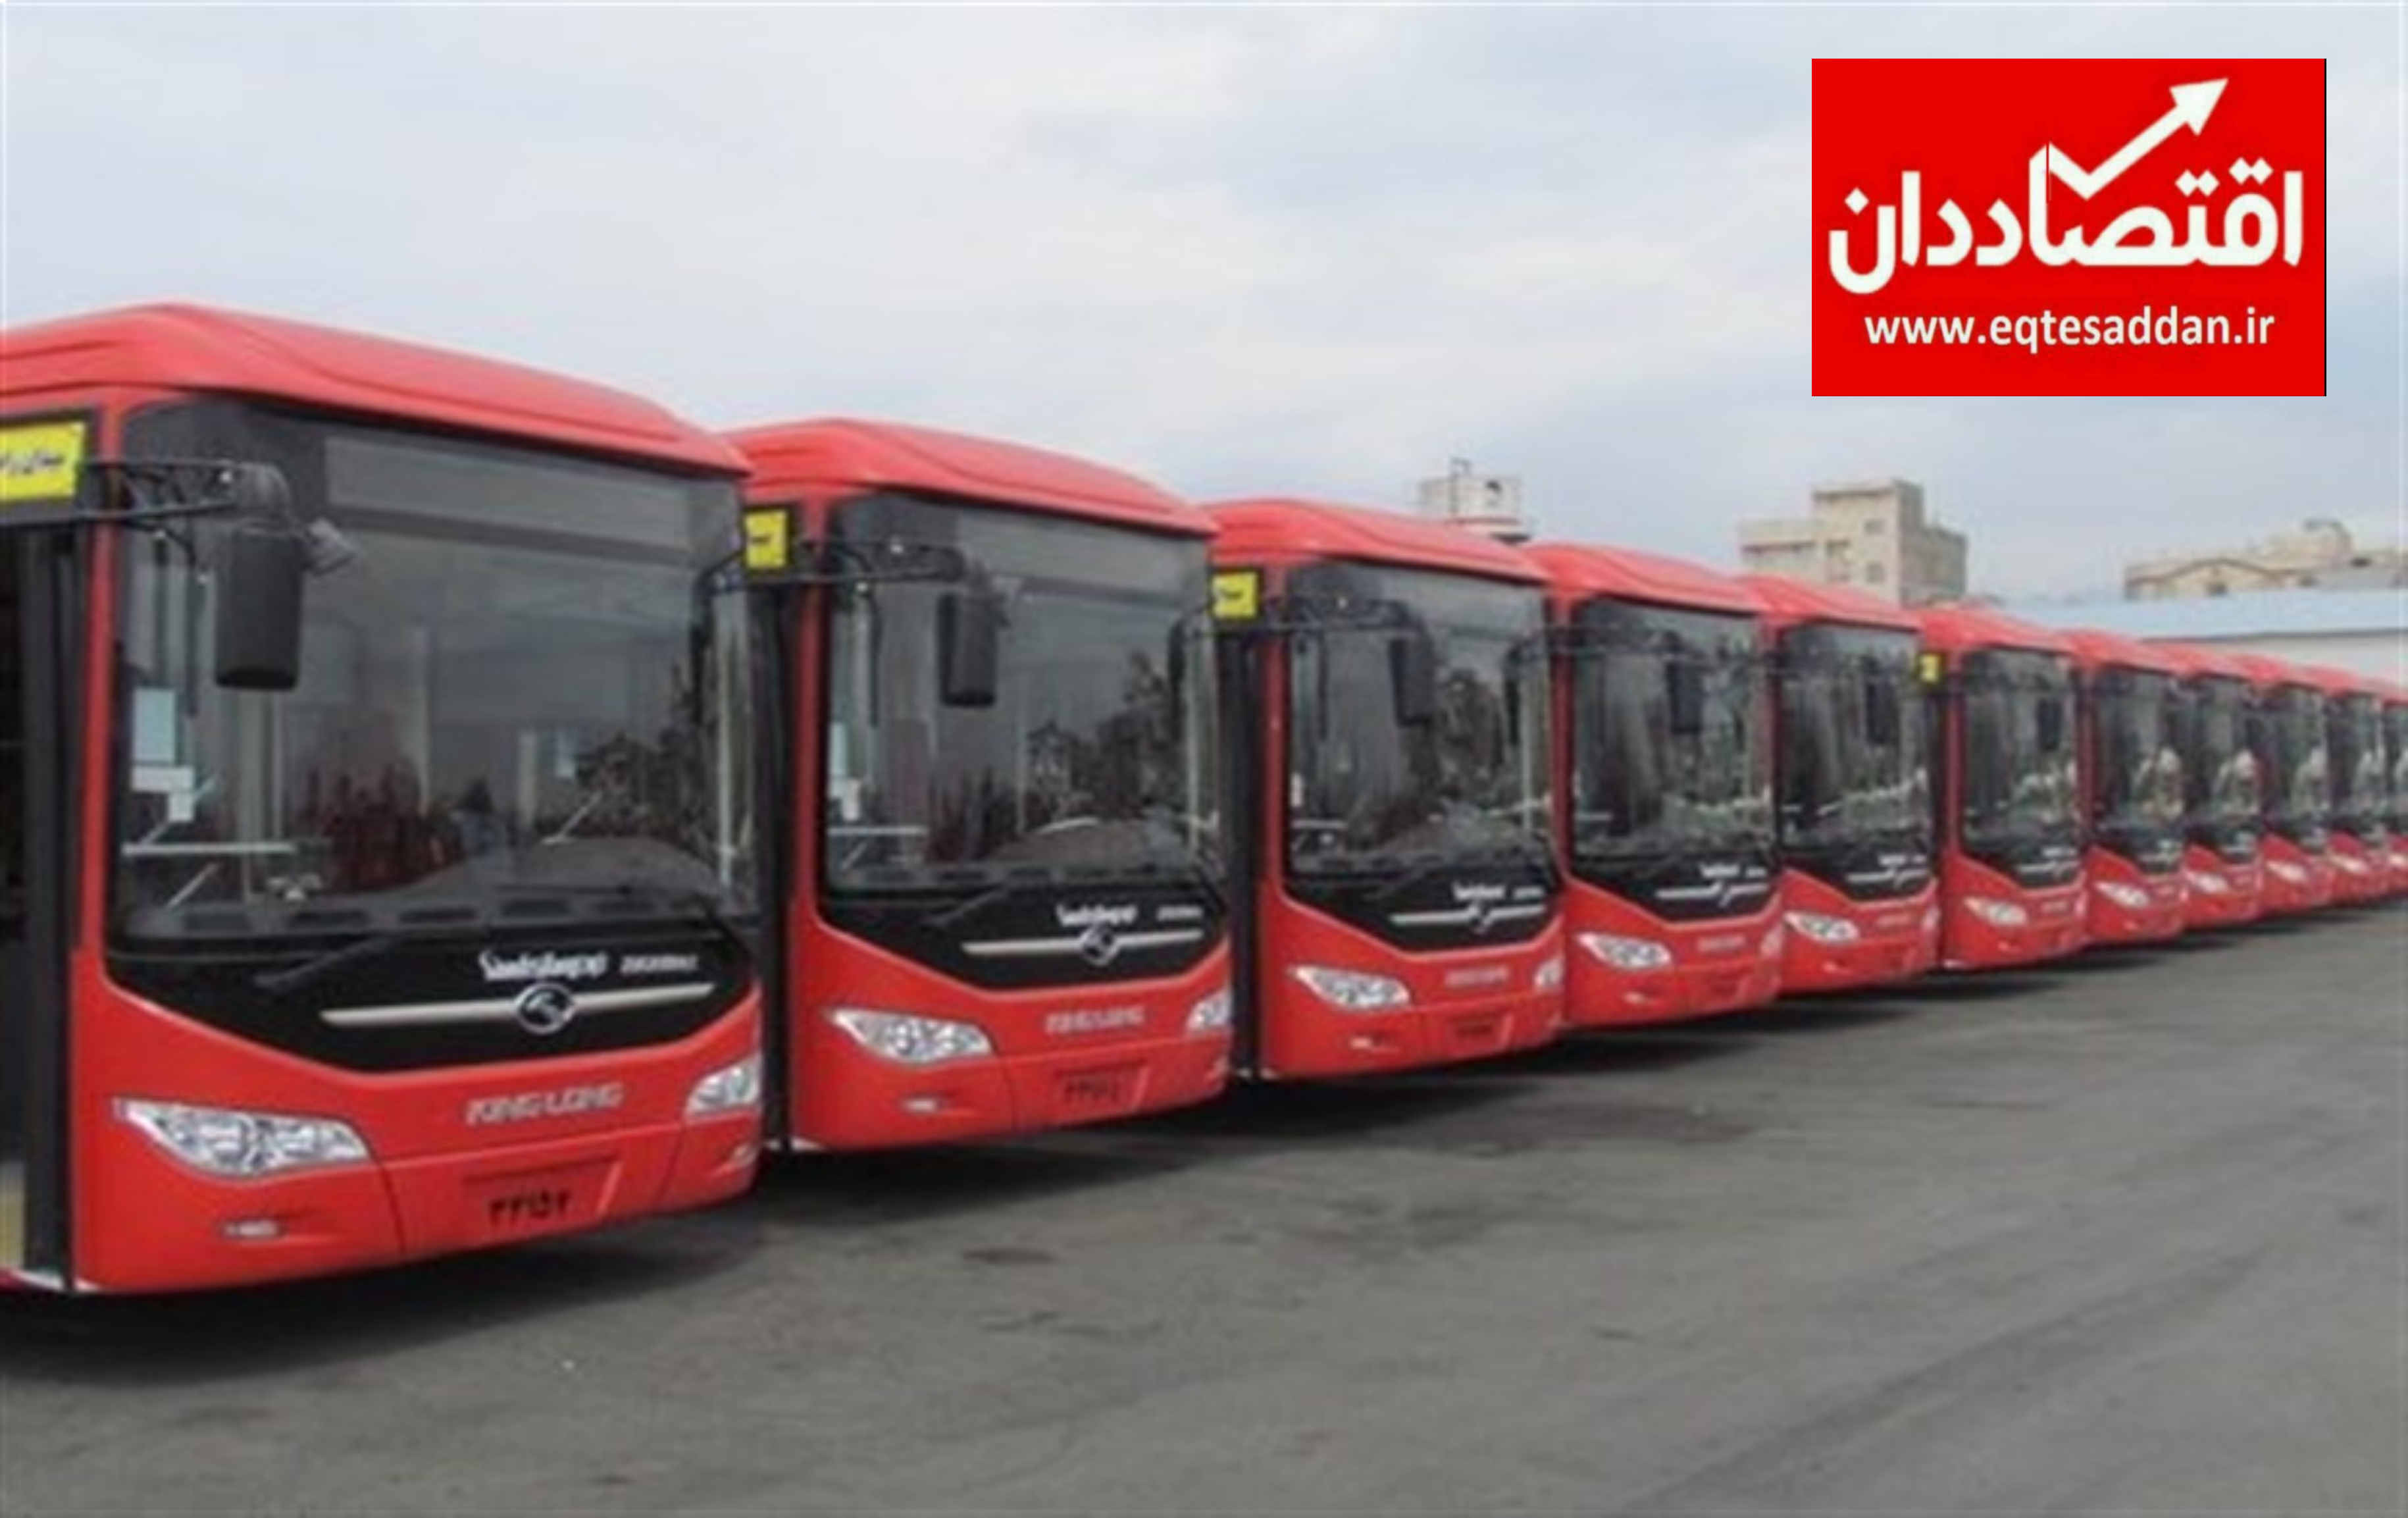 خالق اتوبوس الکترونیکی ایرانی چرا به ترکیه رفت؟!